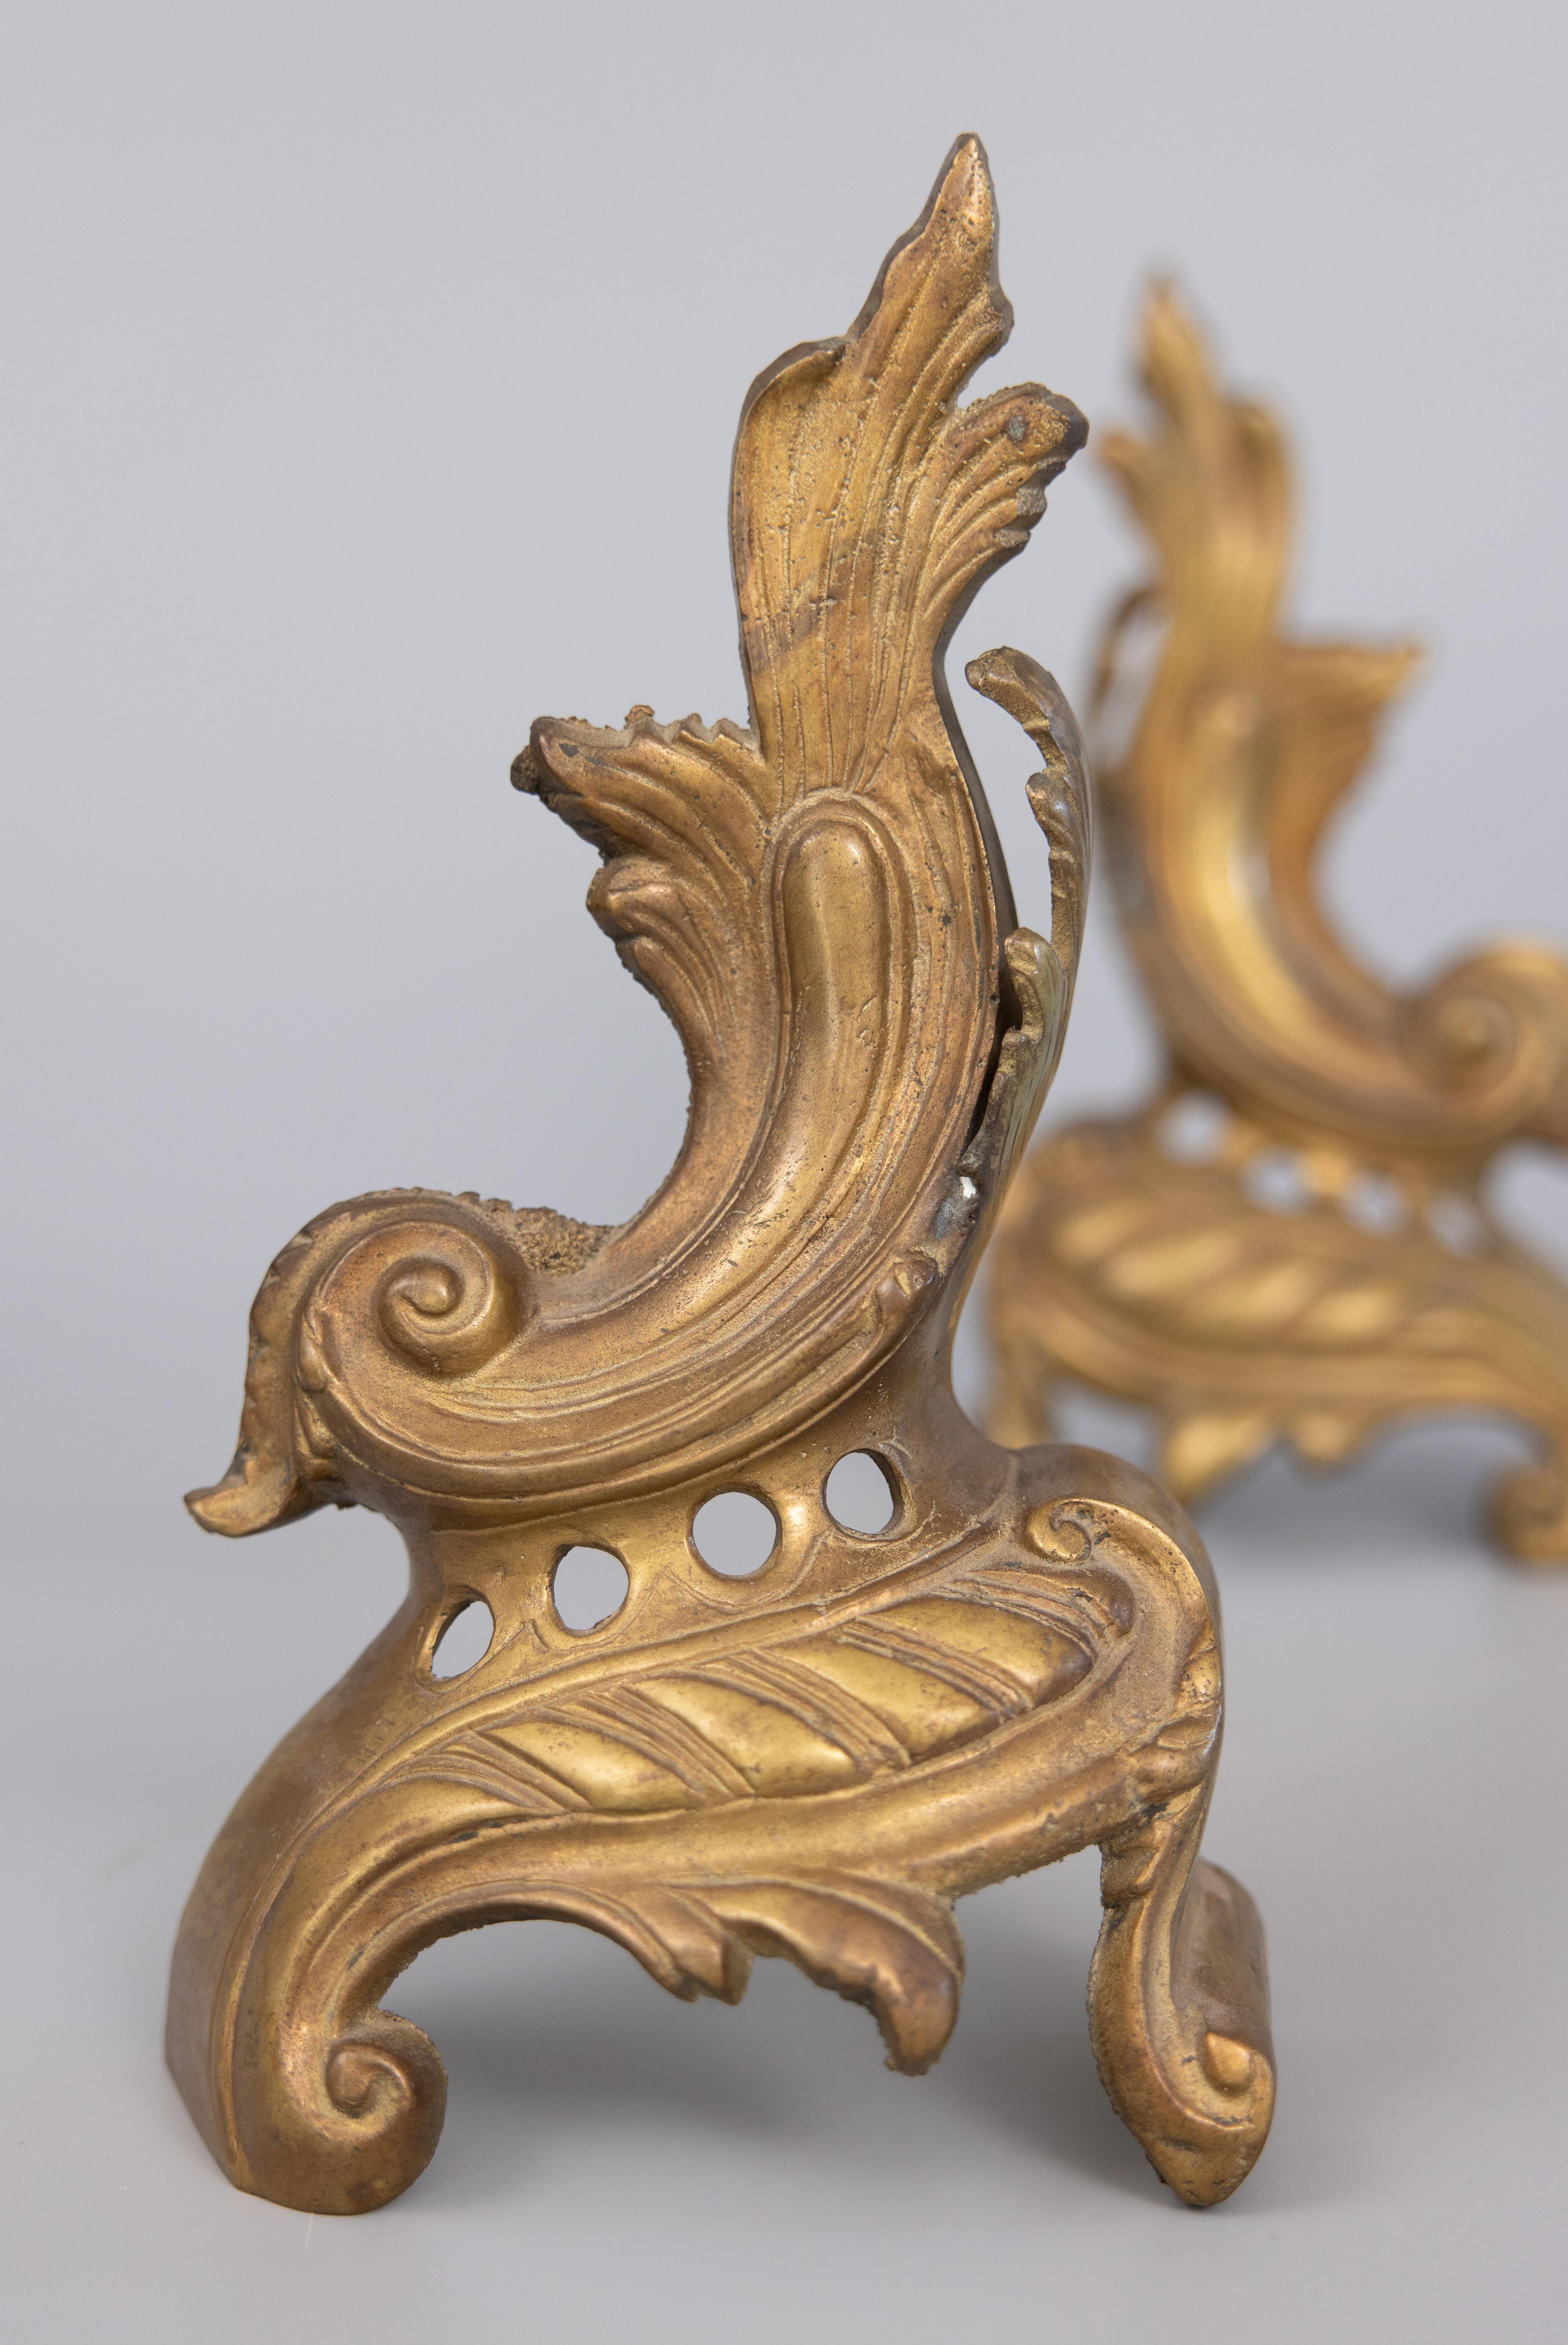 Une magnifique paire d'ornements de cheminée ou de serre-livres en laiton ornés du XIXe siècle avec des feuilles d'acanthe stylisées. Elles seront ravissantes sur une cheminée, une étagère ou un bureau.